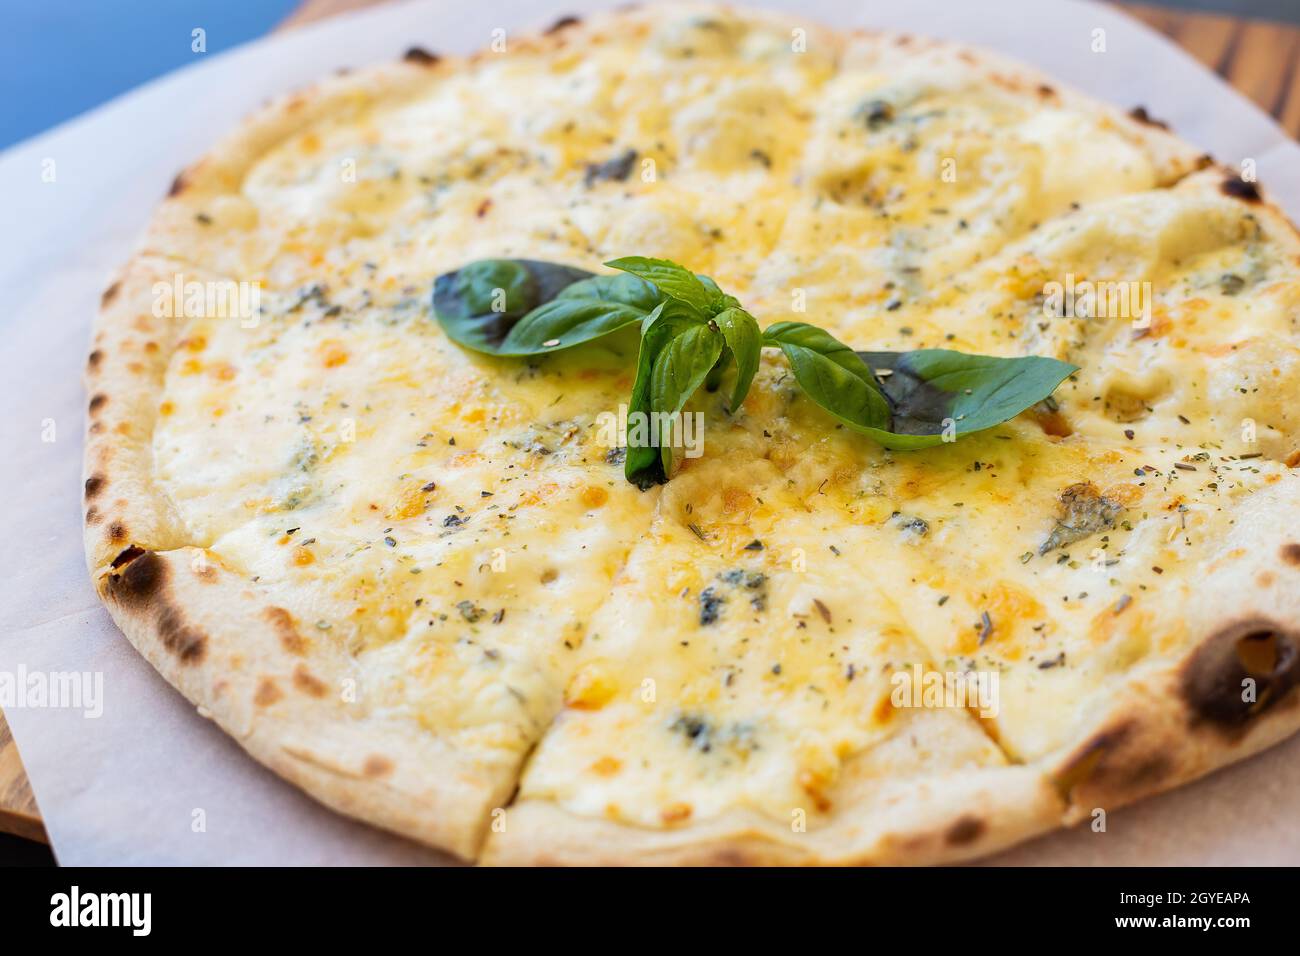 Fragrante pizza italiana a quattro formaggi: Parmigiano, blu dor, mozzarella, cheddar, primo piano, vista dall'alto Foto Stock